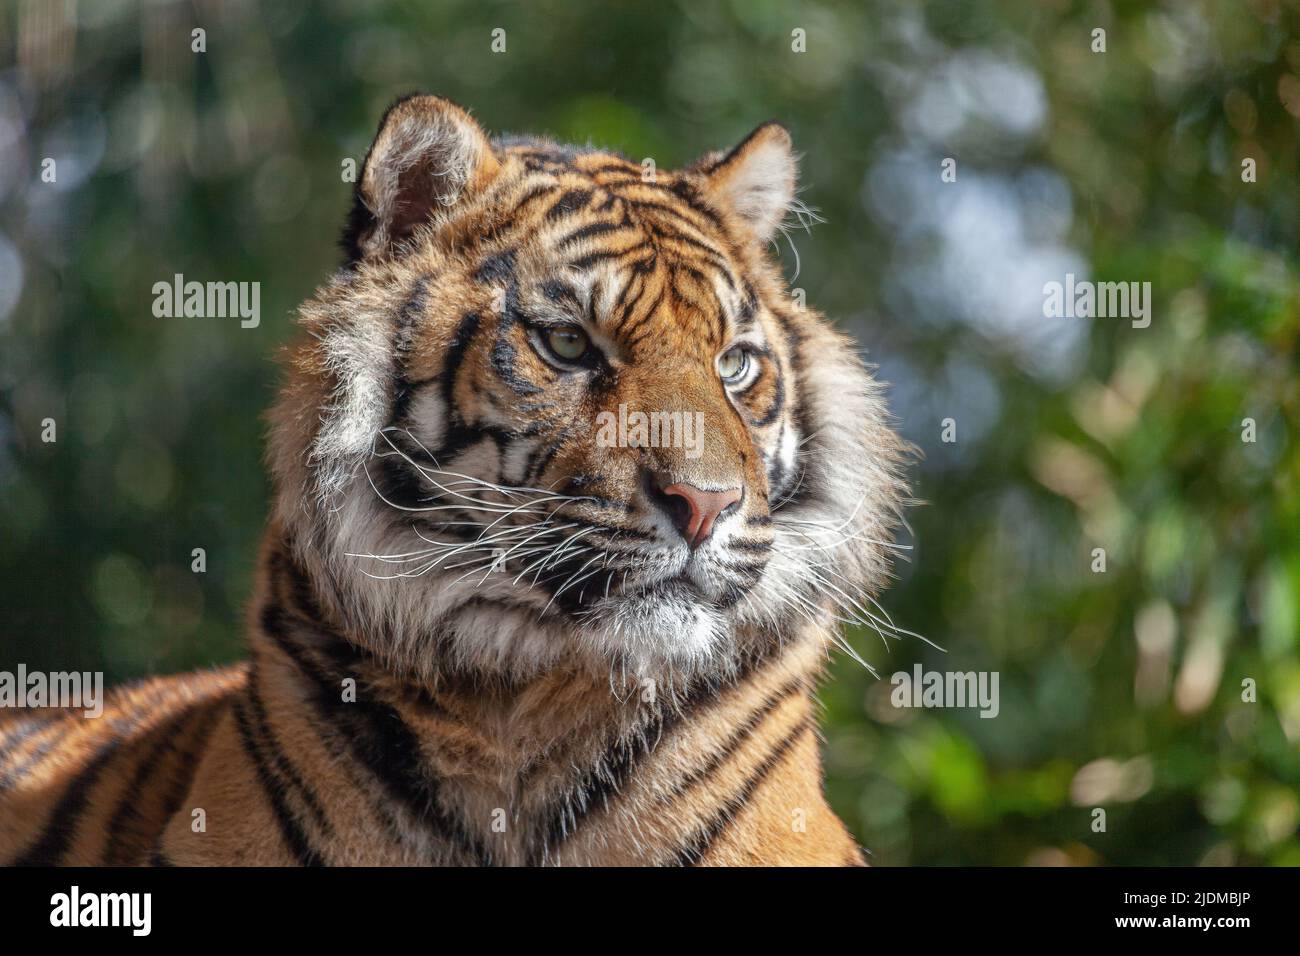 Close-up of a Sumatran Tiger (Panthera tigris sumatrae). Stock Photo